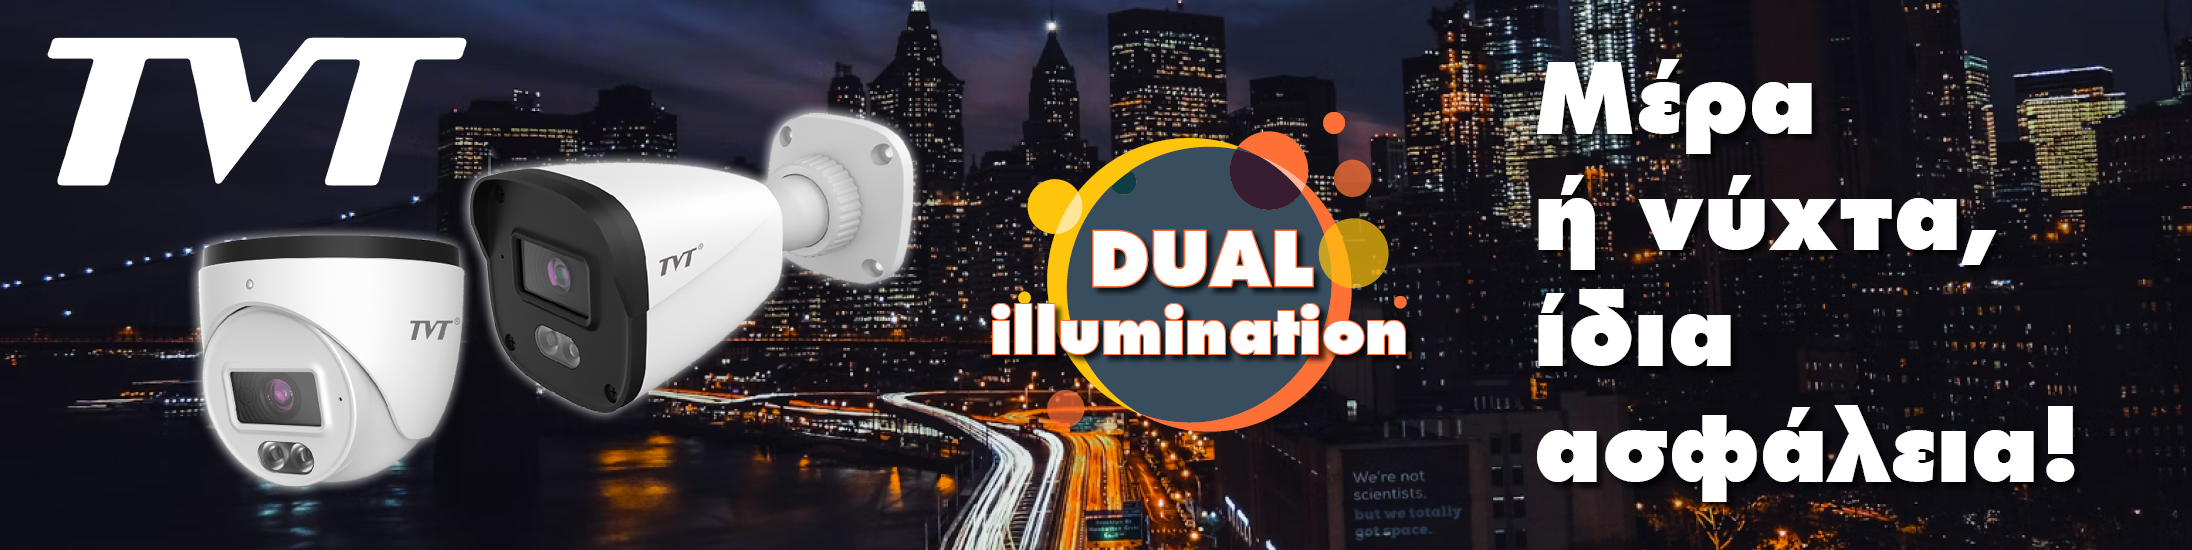 TVT_Dual Illumination